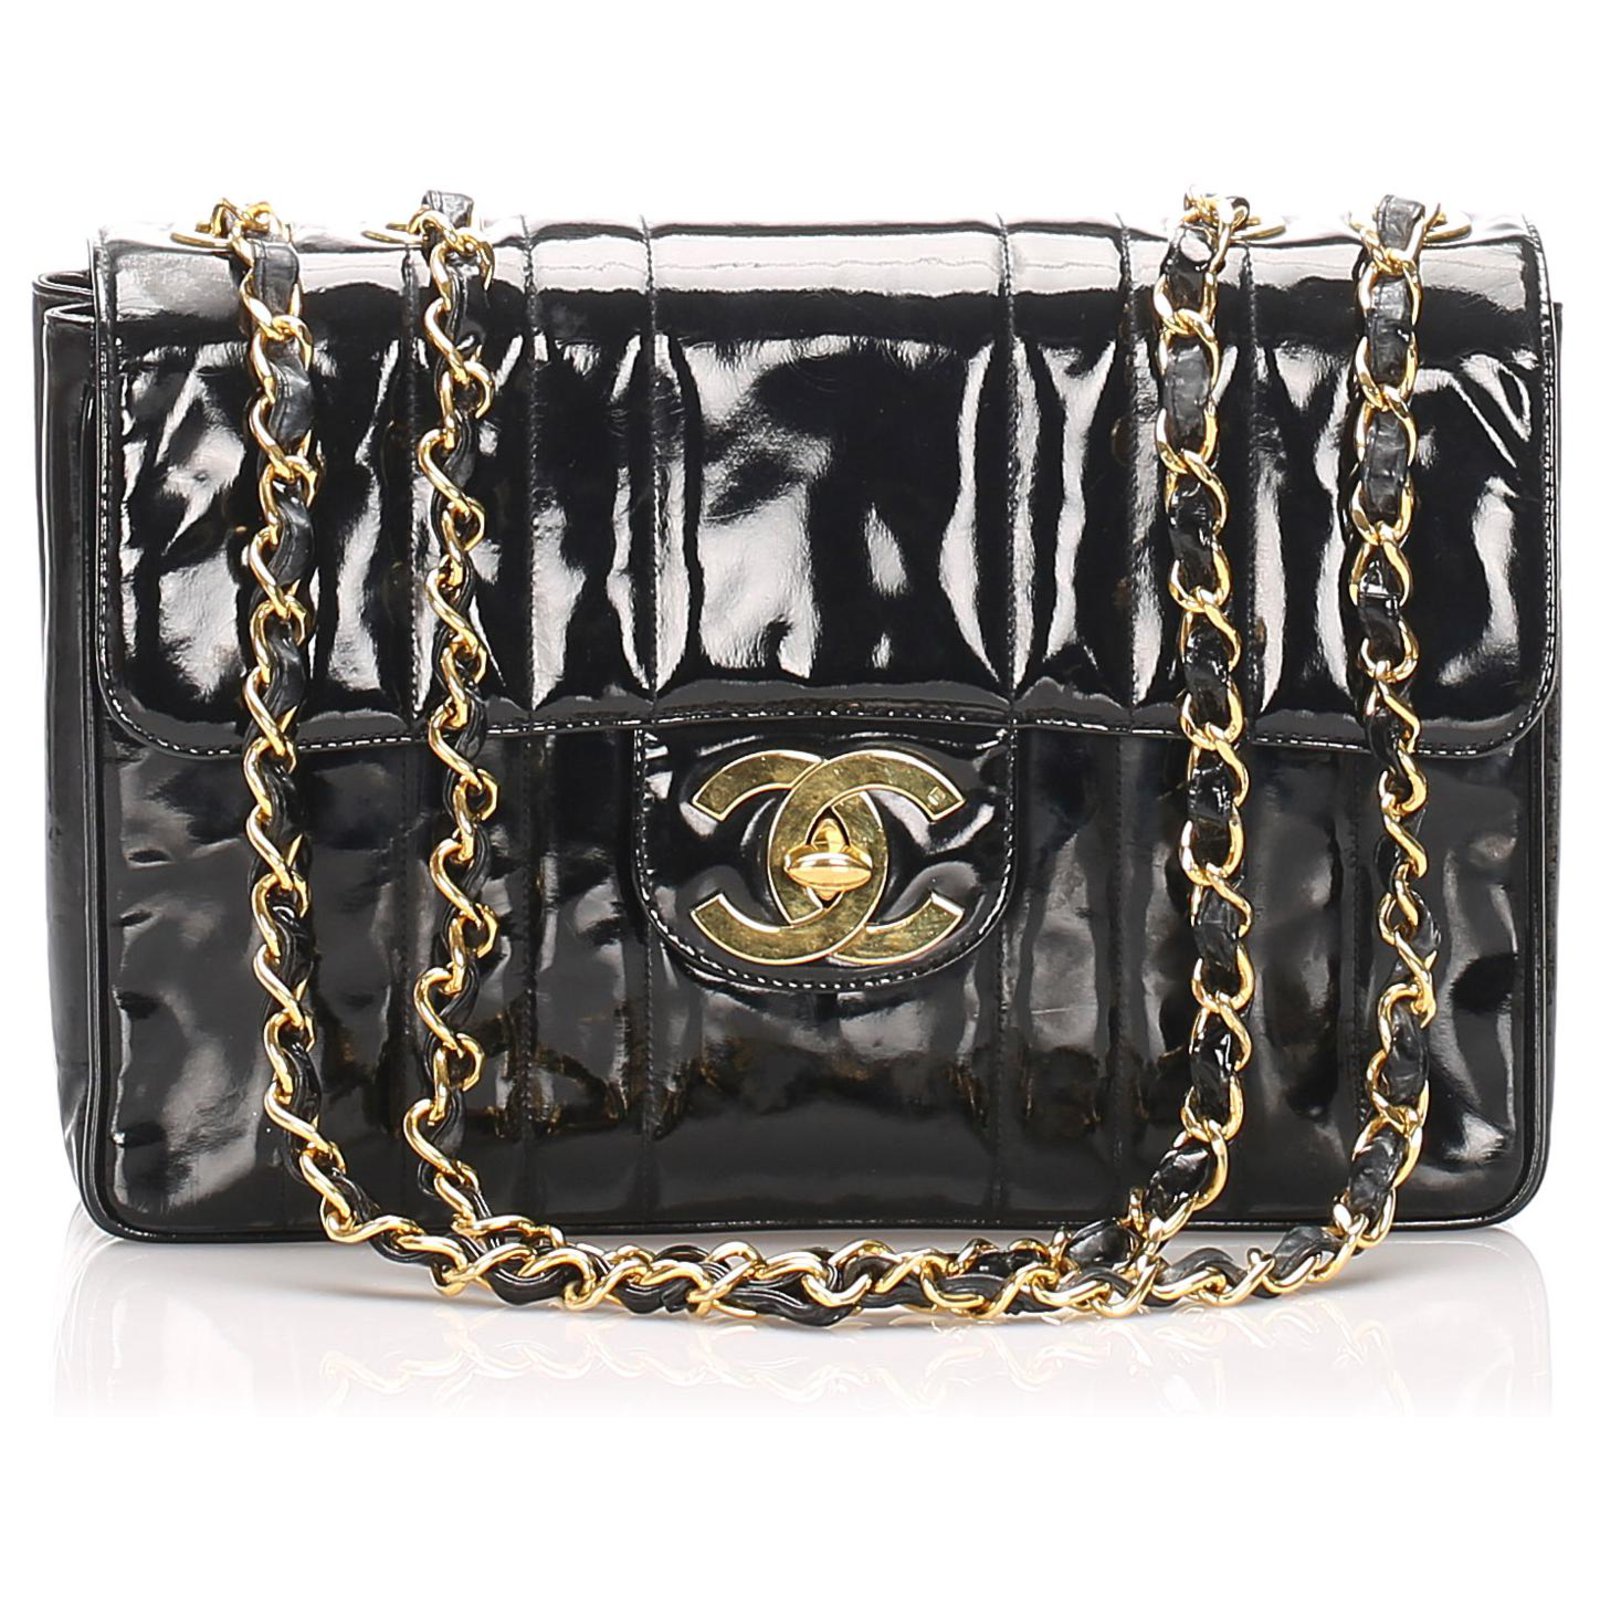 Chanel Vintage Mademoiselle Jumbo Classic Flap Bag Black Lambskin